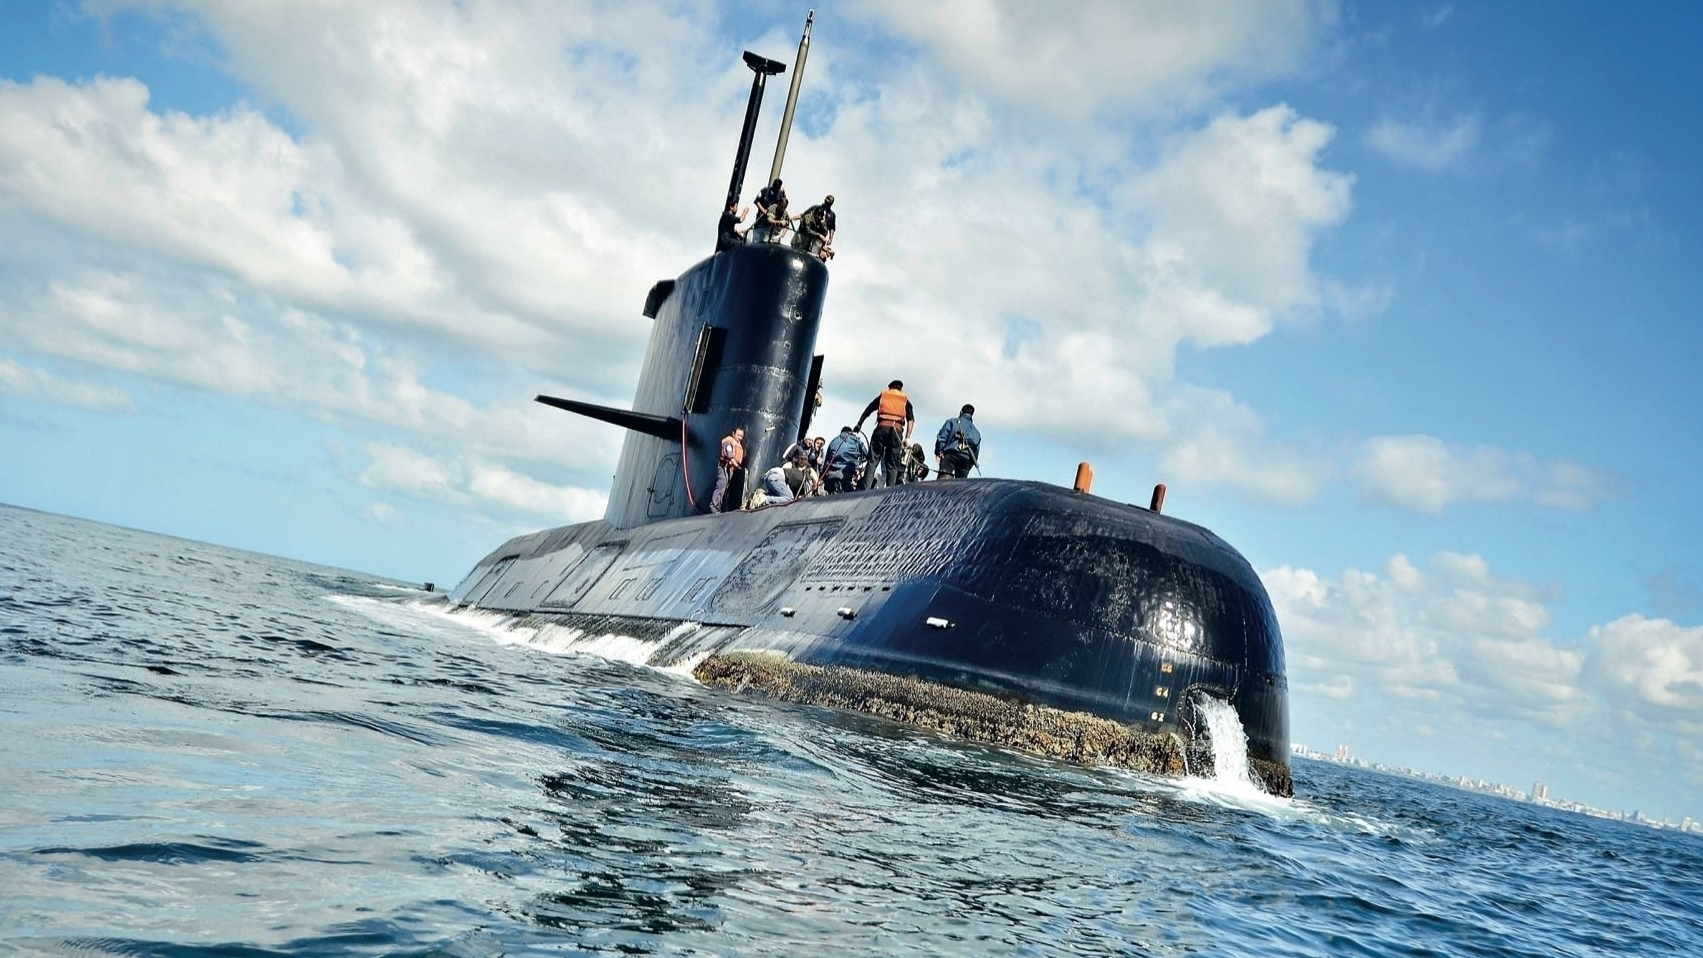 Los familiares del submarino ARA San Juan son algunas de las víctimas del espionaje ilegal, de acuerdo al informe de la comisión bicameral de inteligencia. (Armada Argentina/Juan Sebastián Lobos)